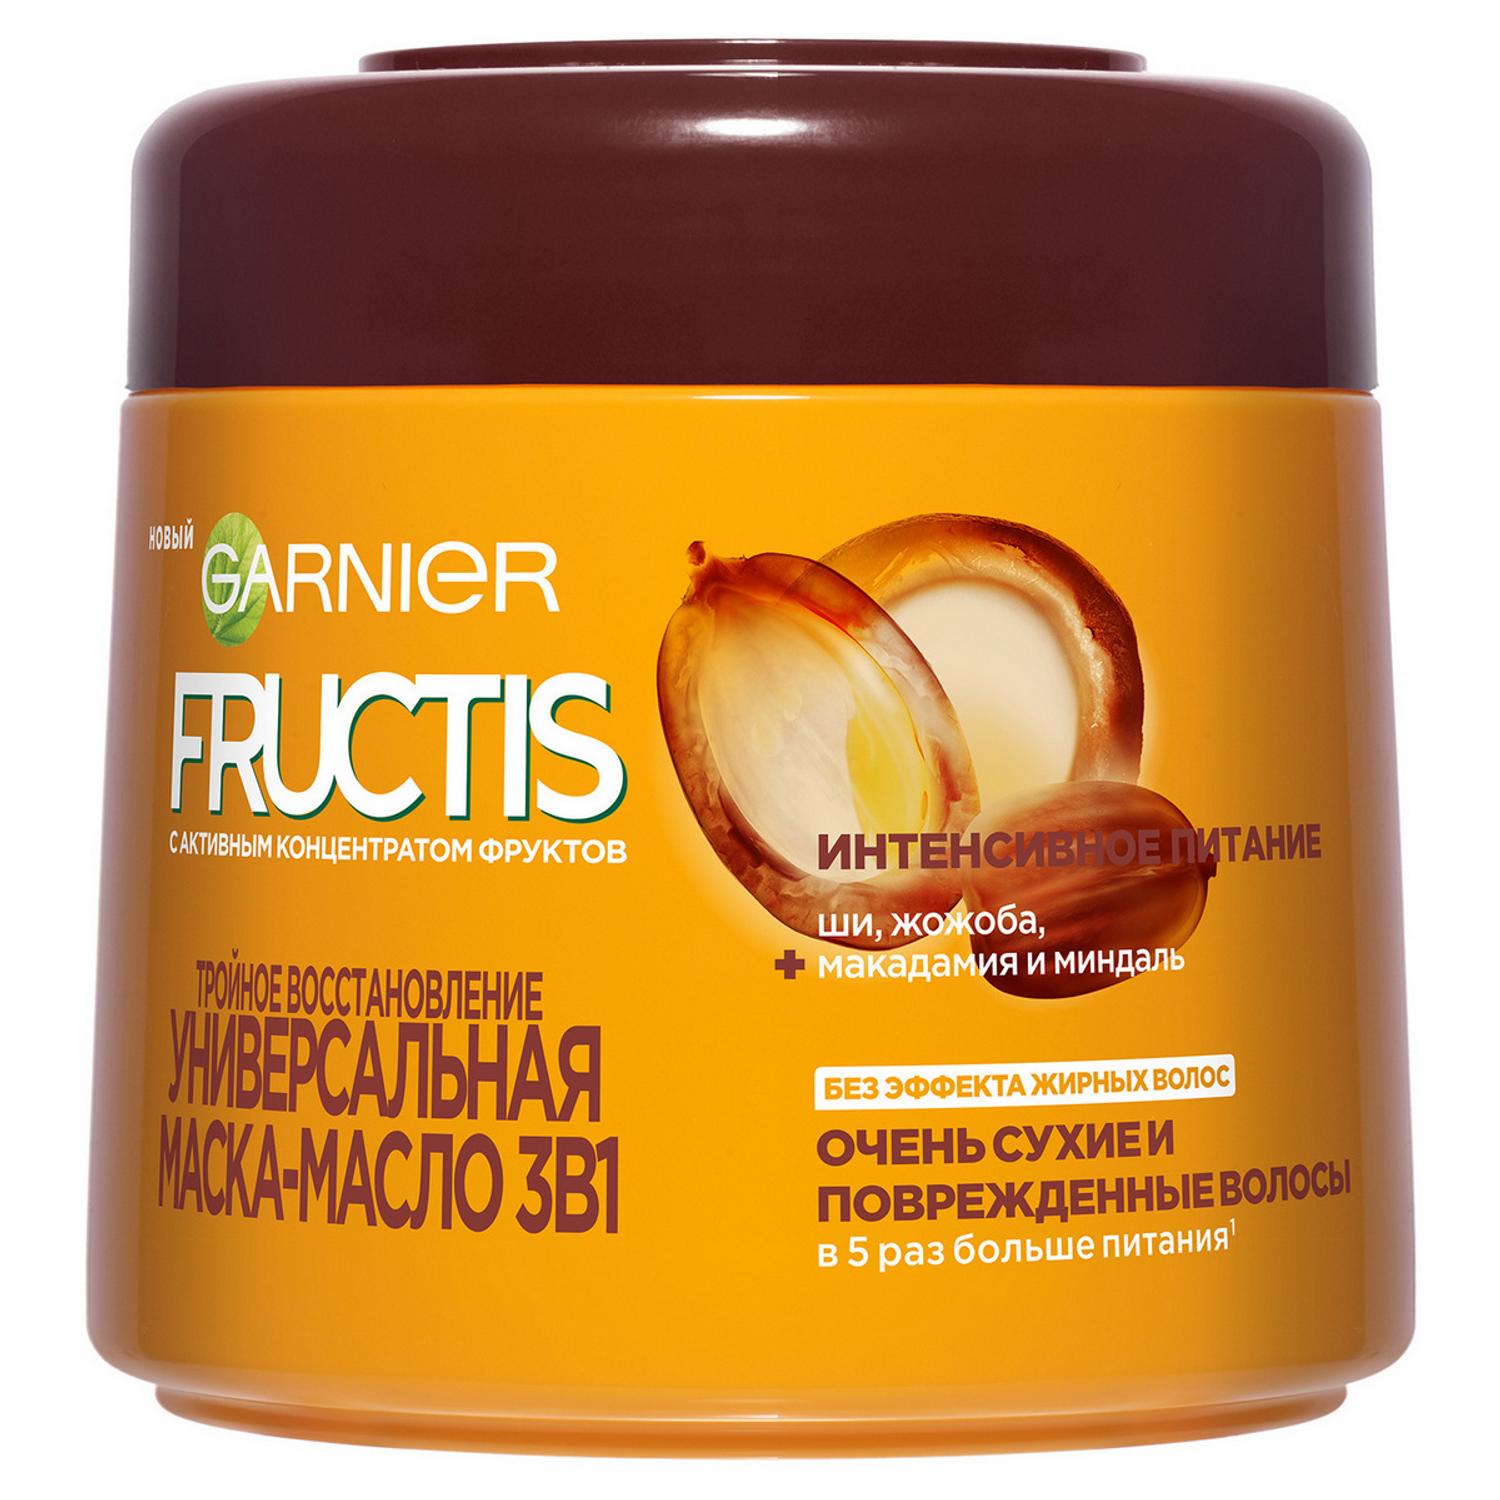 Маска-масло для волос Garnier Fructis Тройное восстановление 300 мл garnier маска масло для волос 3 в 1 fructis тройное восстановление 300 г 300 мл банка